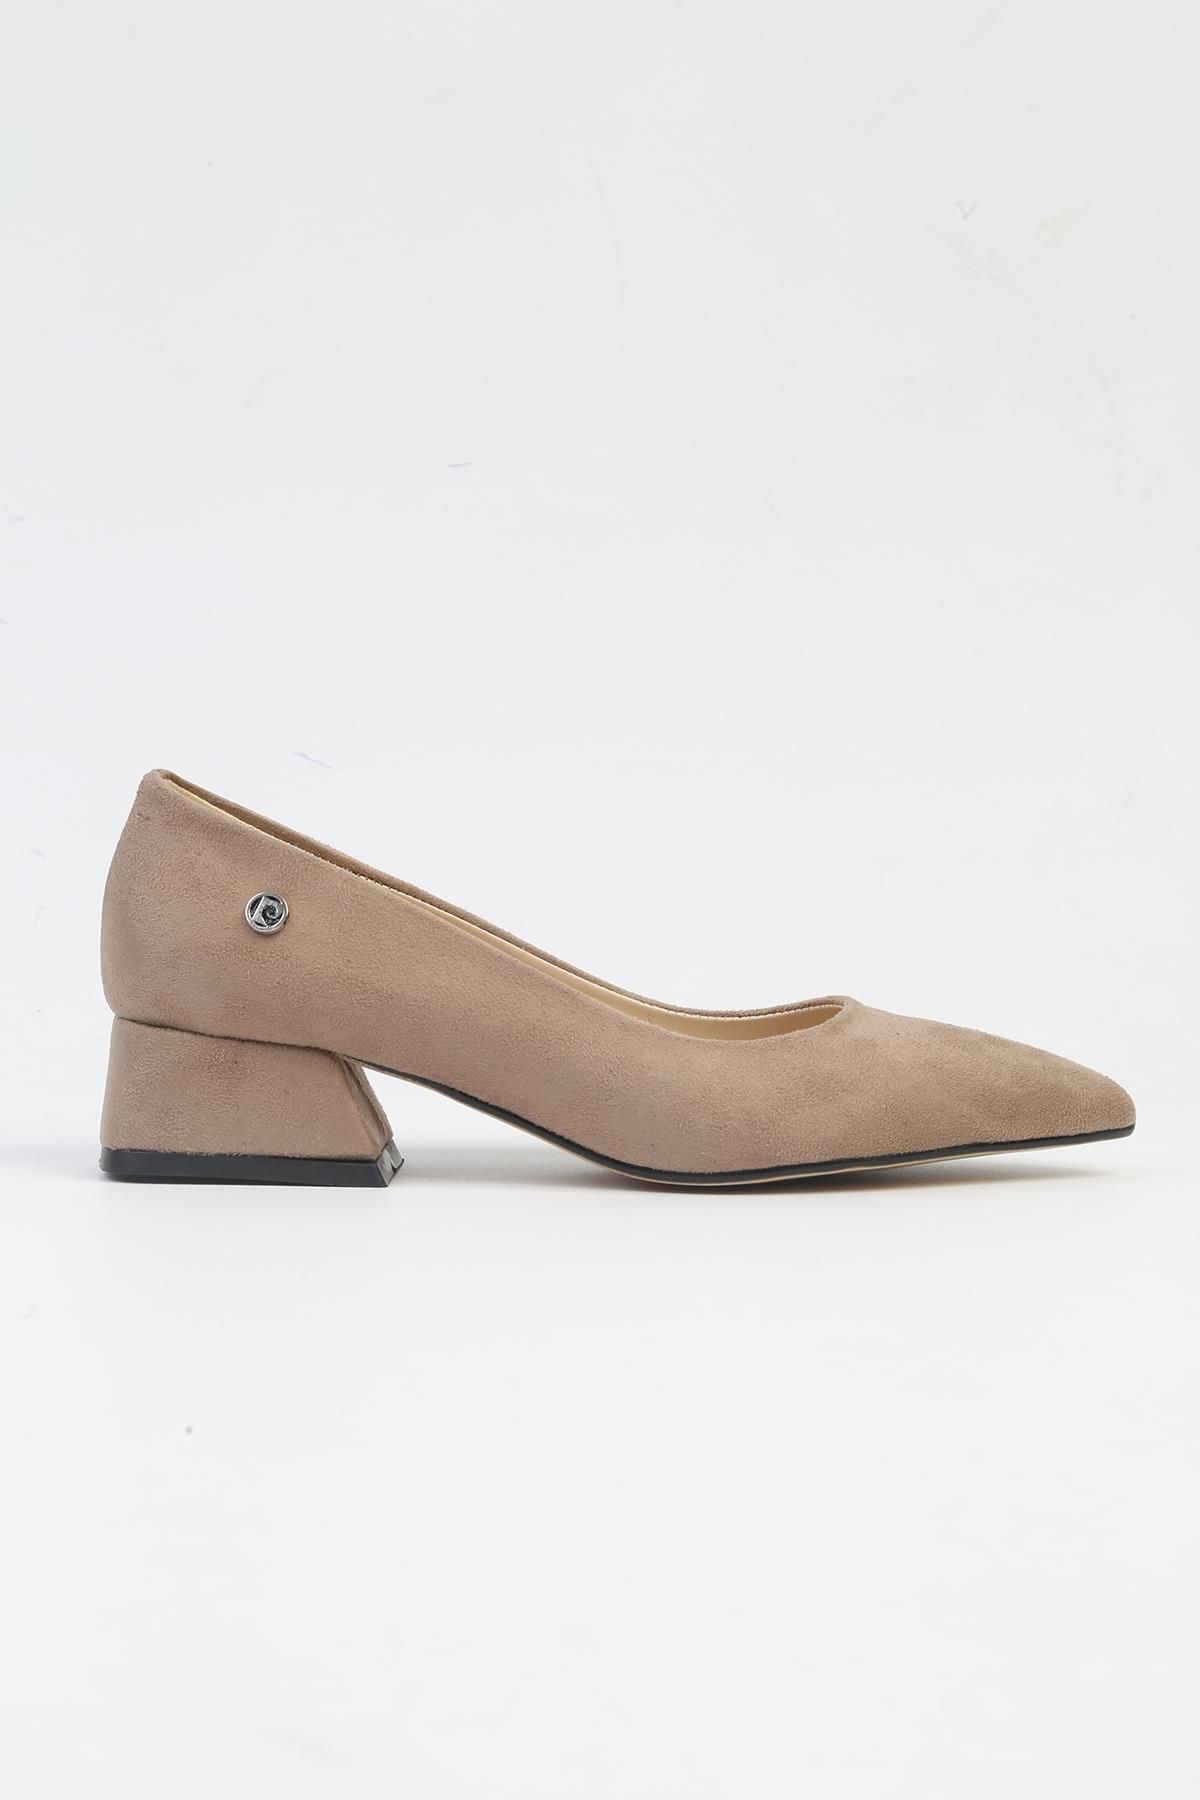 Pierre Cardin ® |PC-52009-3478 Vizon Suet-Kadın Topuklu Ayakkabı